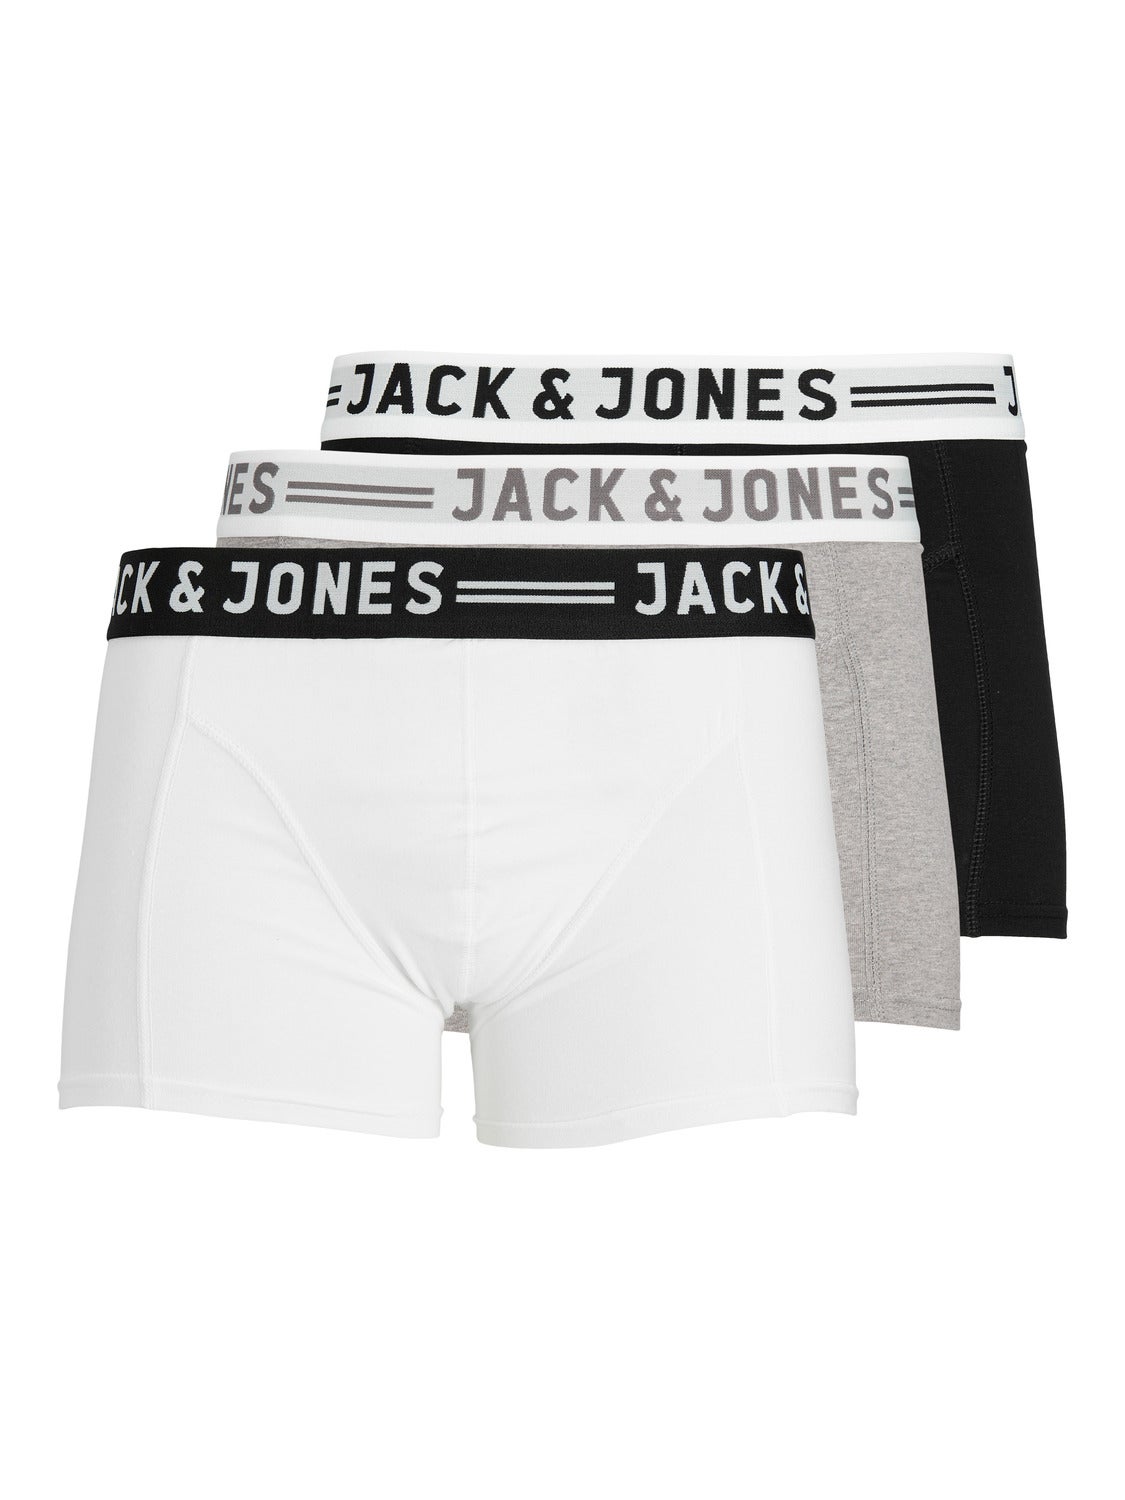 MEN FASHION Underwear & Nightwear Multicolored L Jack & Jones Underpant discount 73% 